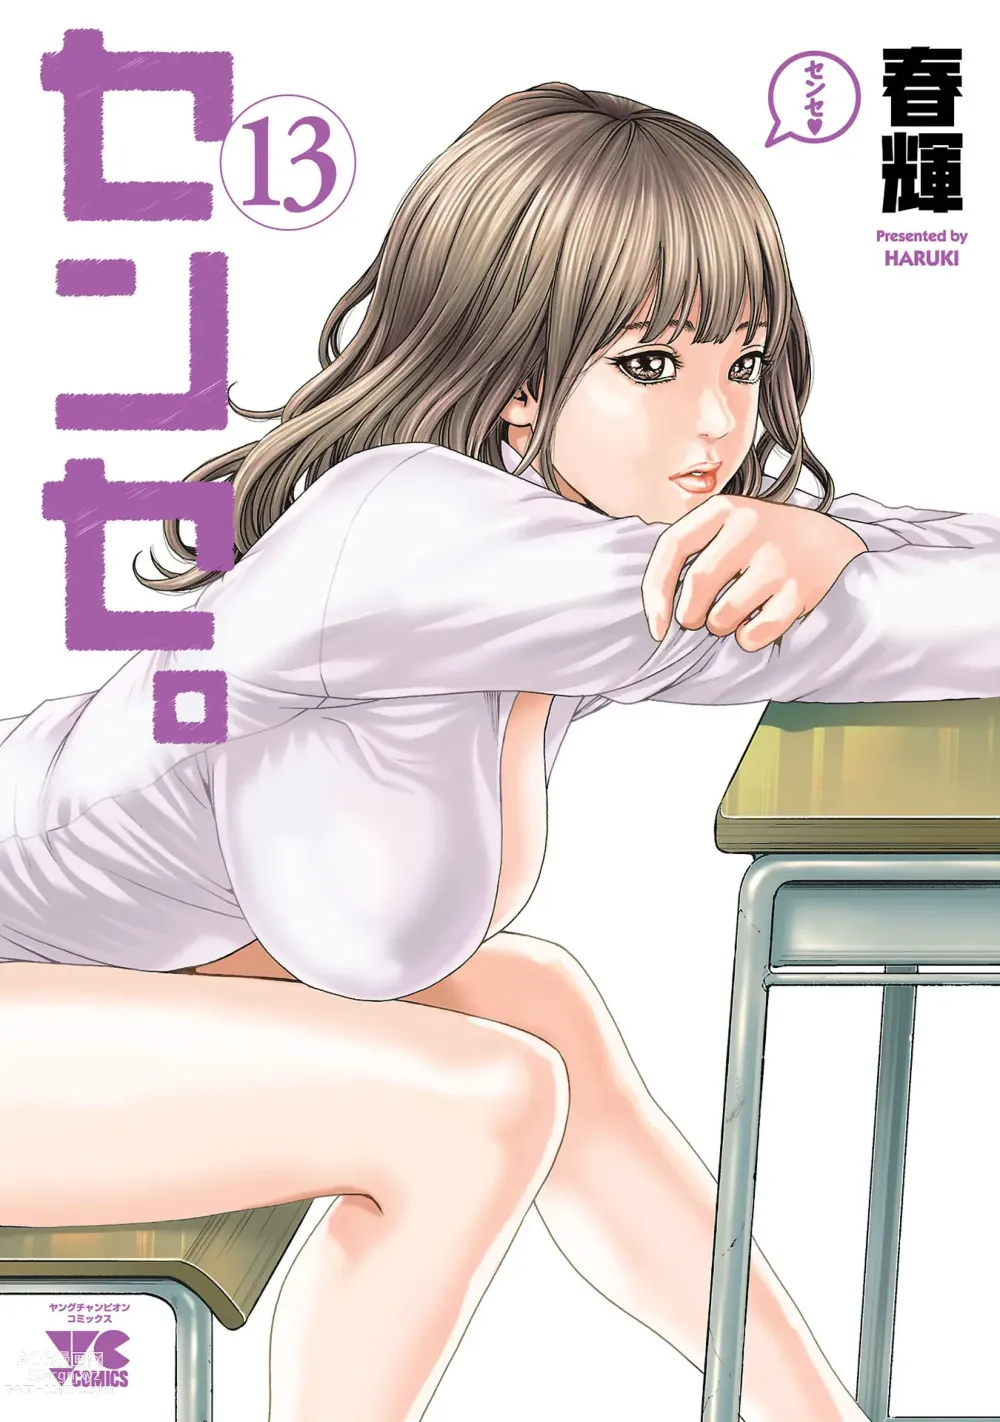 Page 206 of manga sense volume 13